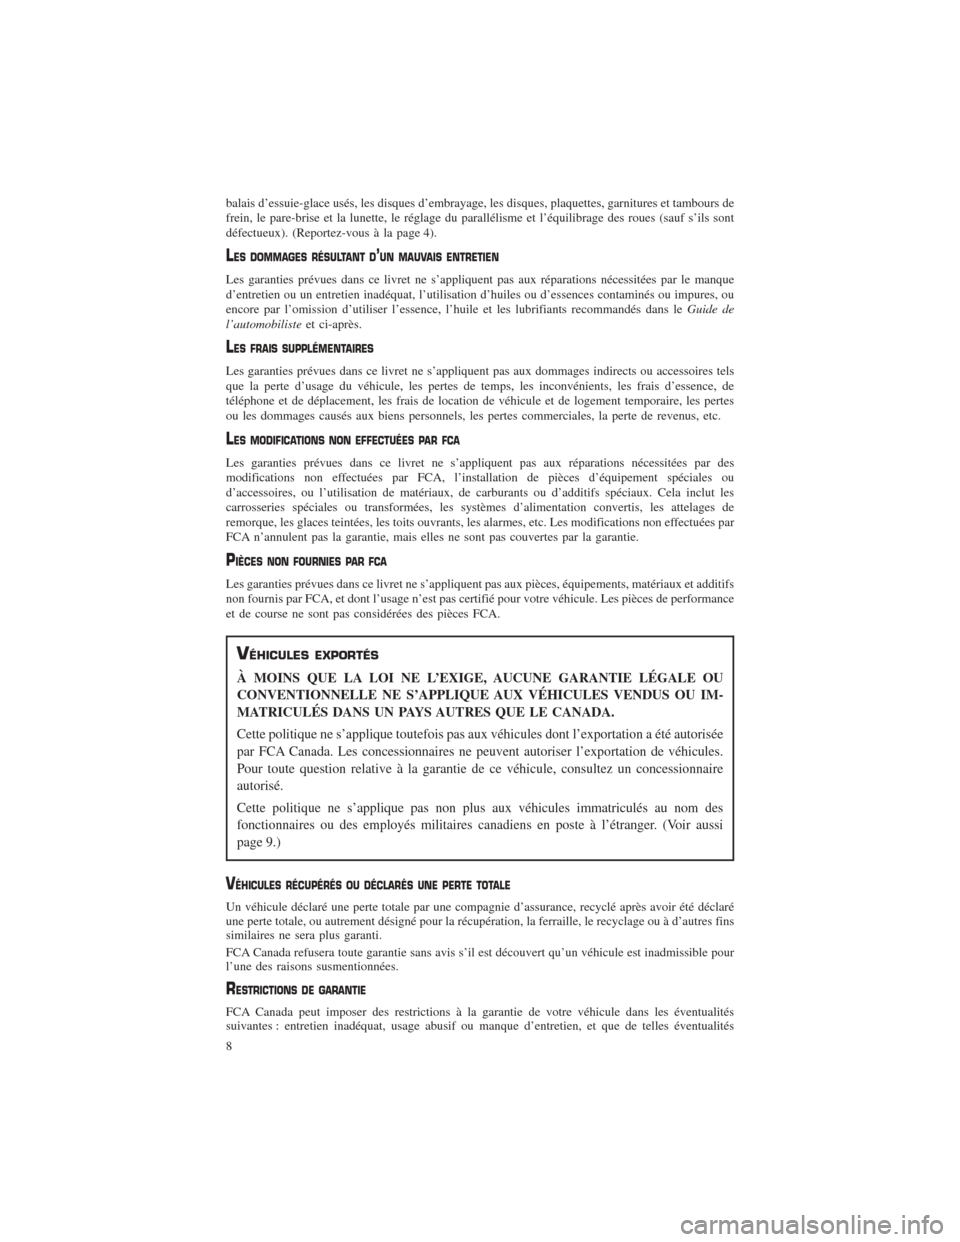 CHRYSLER PACIFICA 2017 2.G Warranty Booklet balais d’essuie-glace usés, les disques d’embrayage, les disques, plaquettes, garnitures et tambours de
frein, le pare-brise et la lunette, le réglage du parallélisme et l’équilibrage des ro